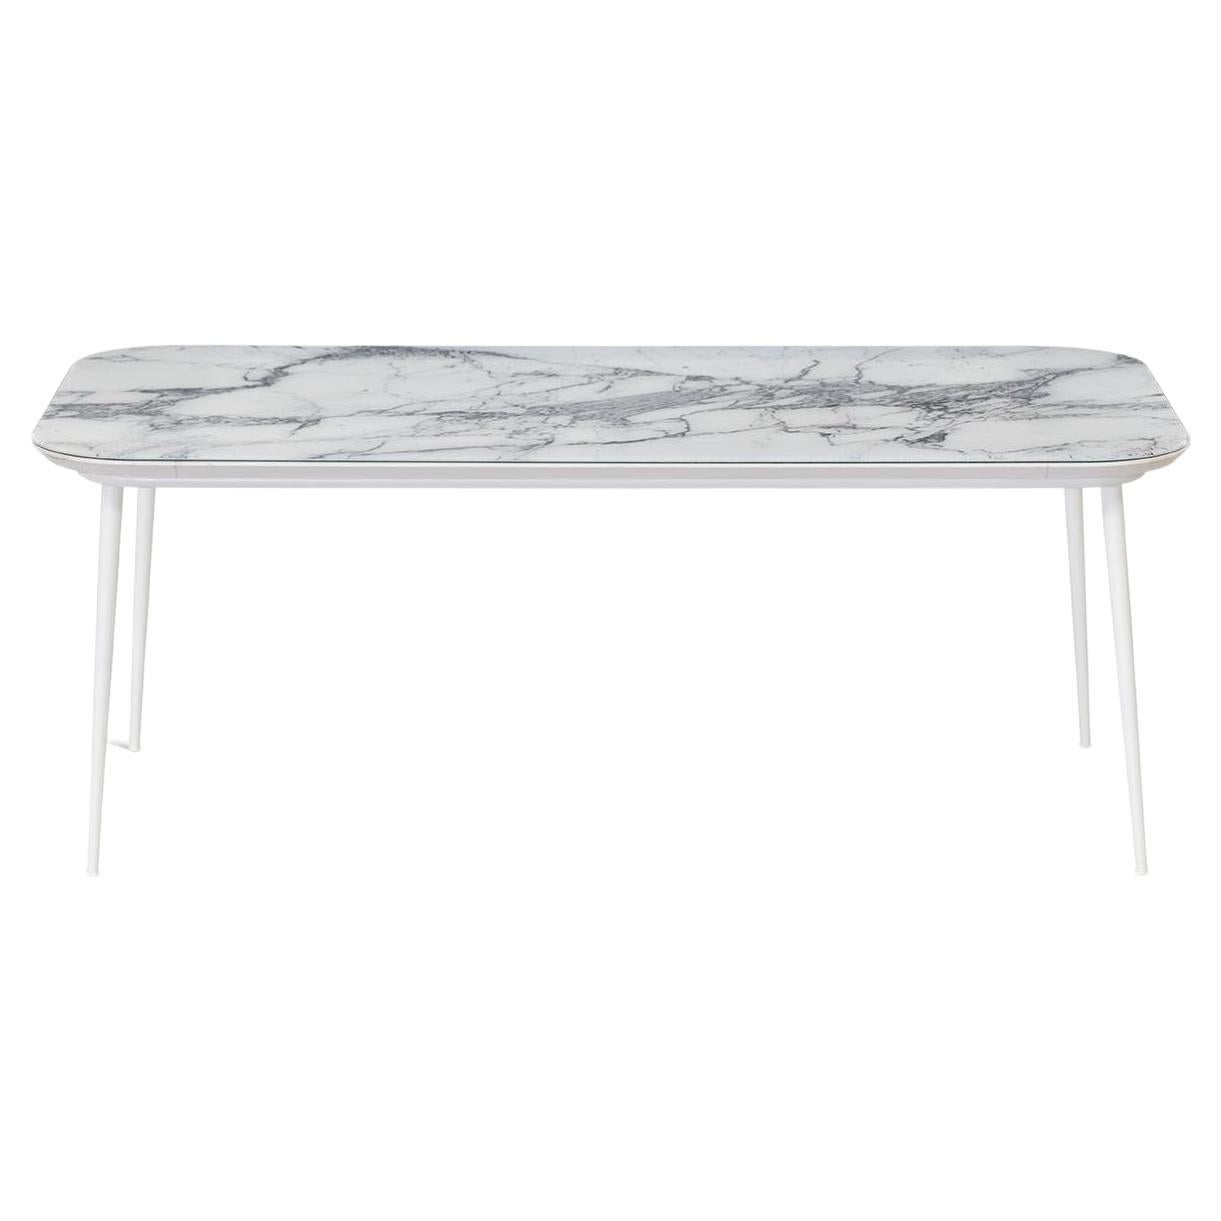 Outdoor-Tisch, Metall, konische Beine, matt lackierte Kunstglasplatte, anpassbar